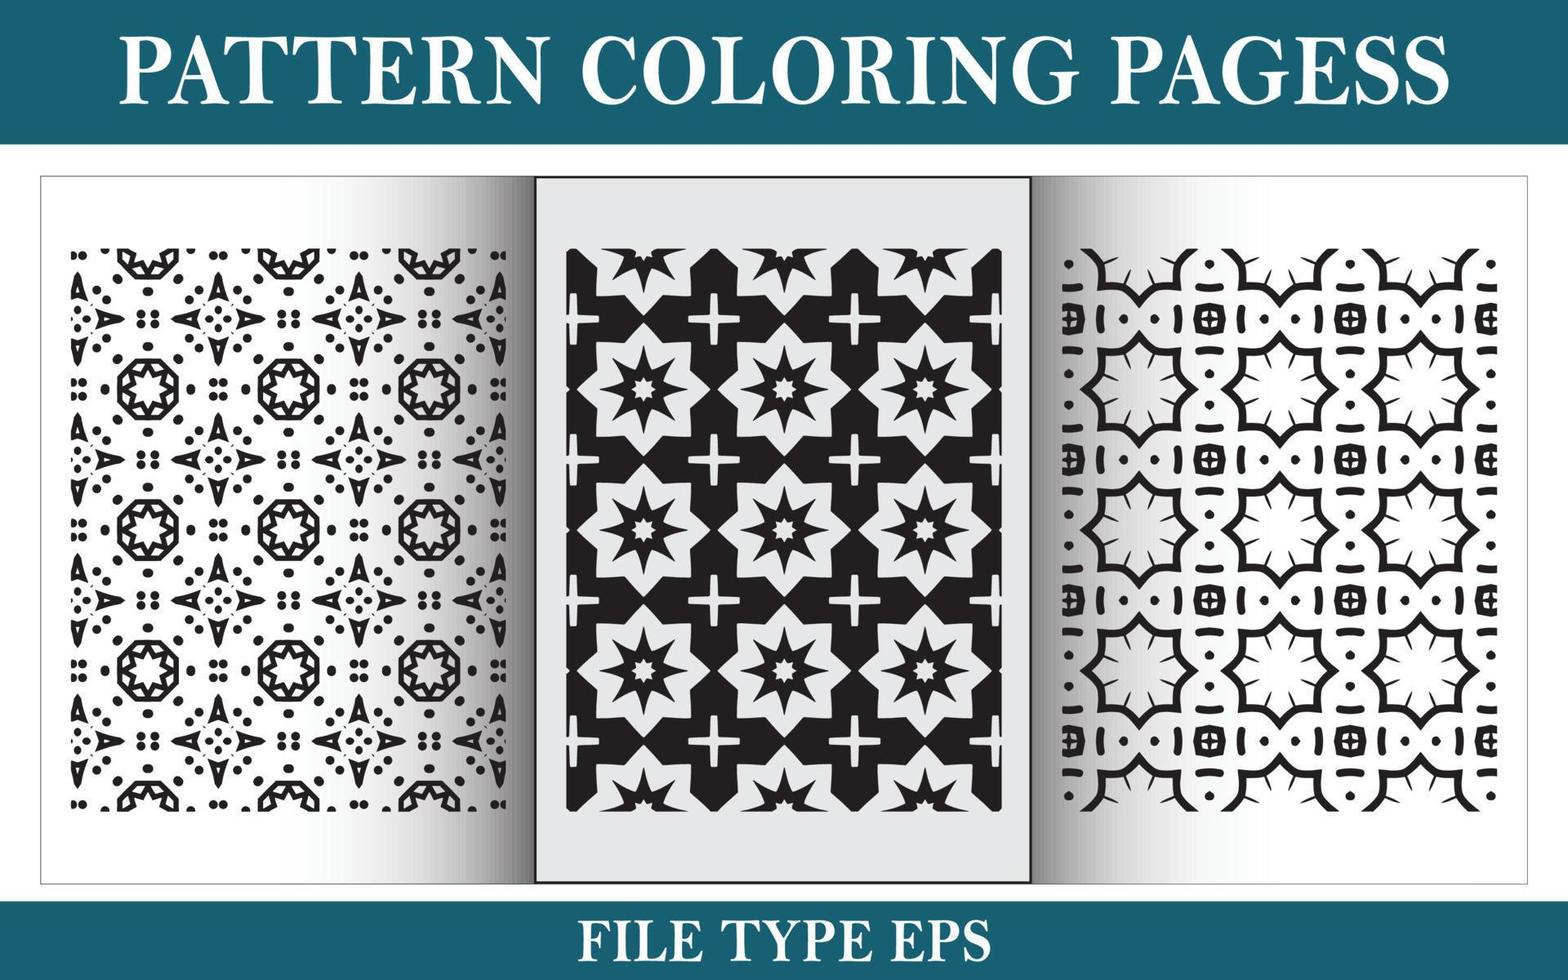 patrón floral para colorear página en blanco y negro vector